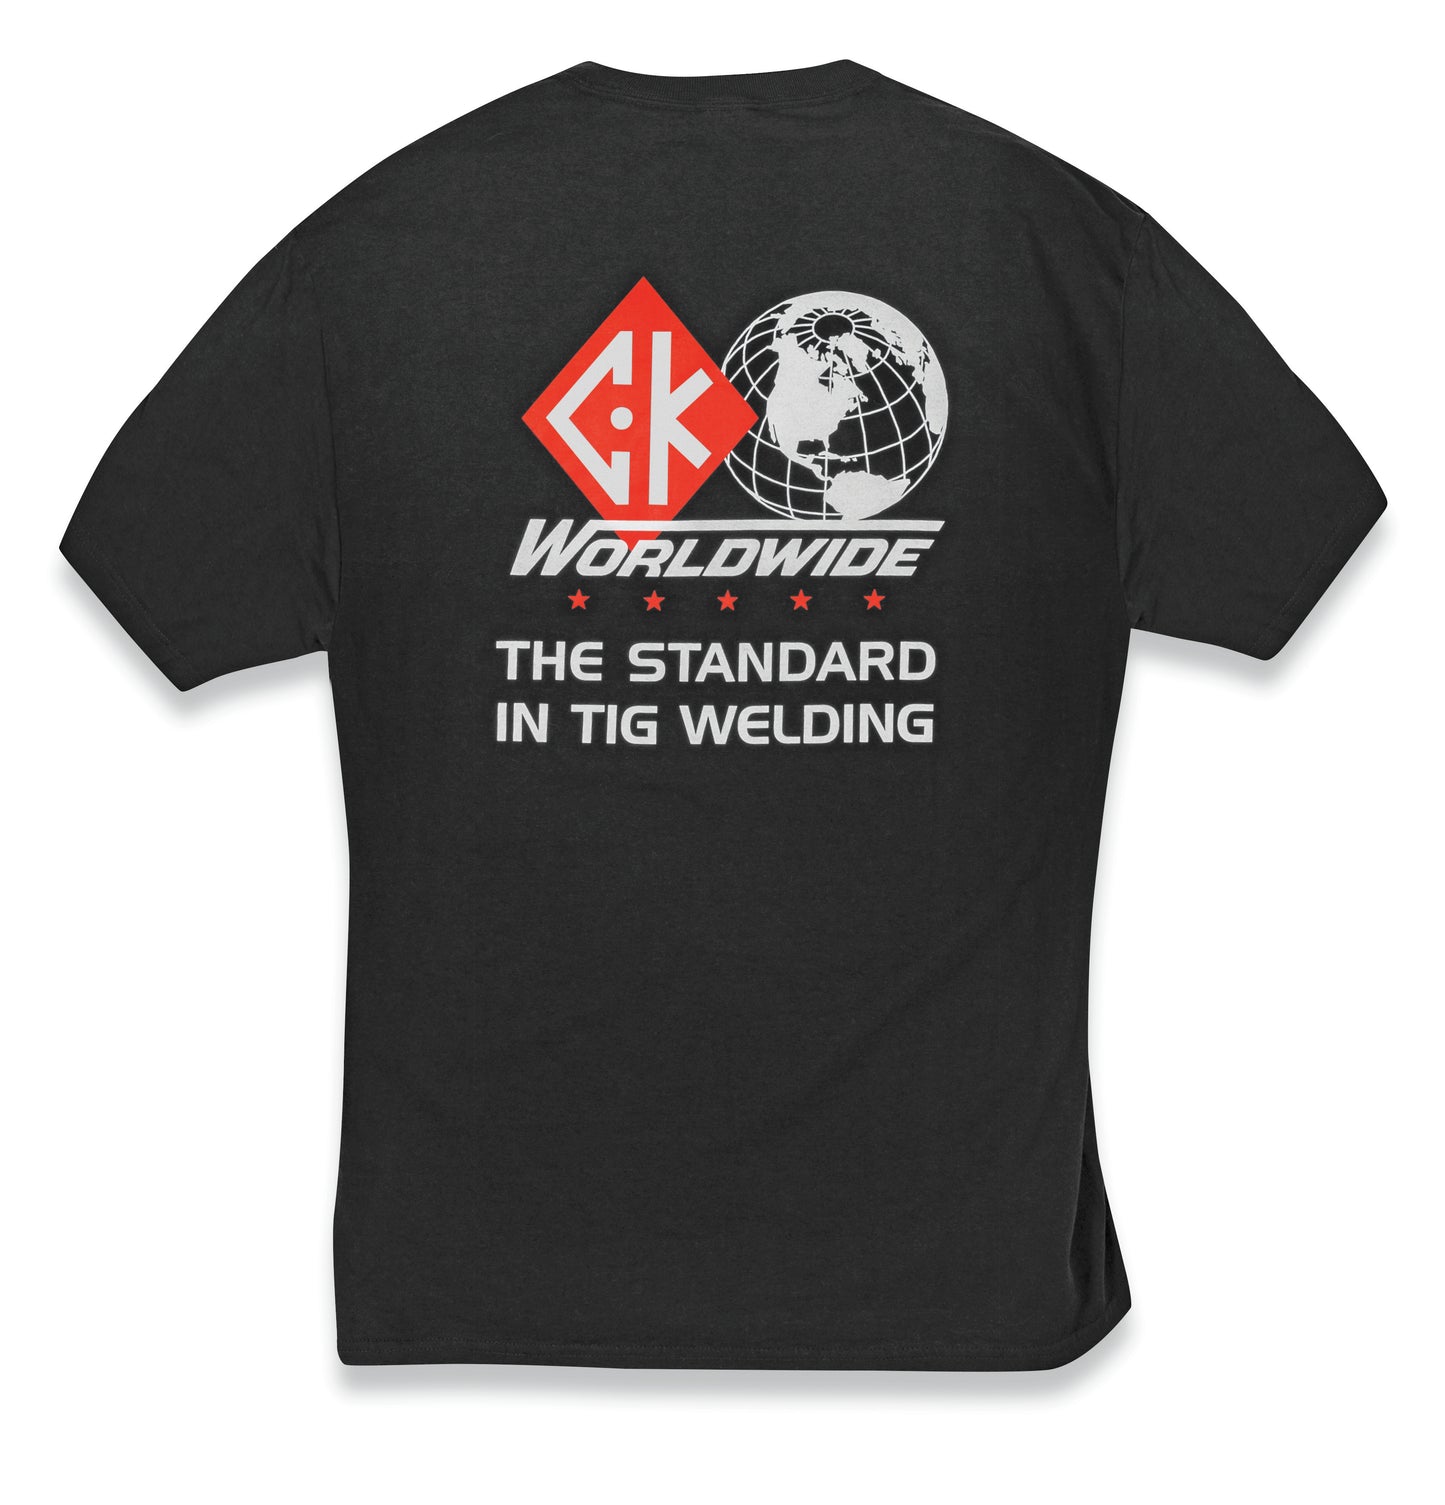 CK Worldwide T-Shirt